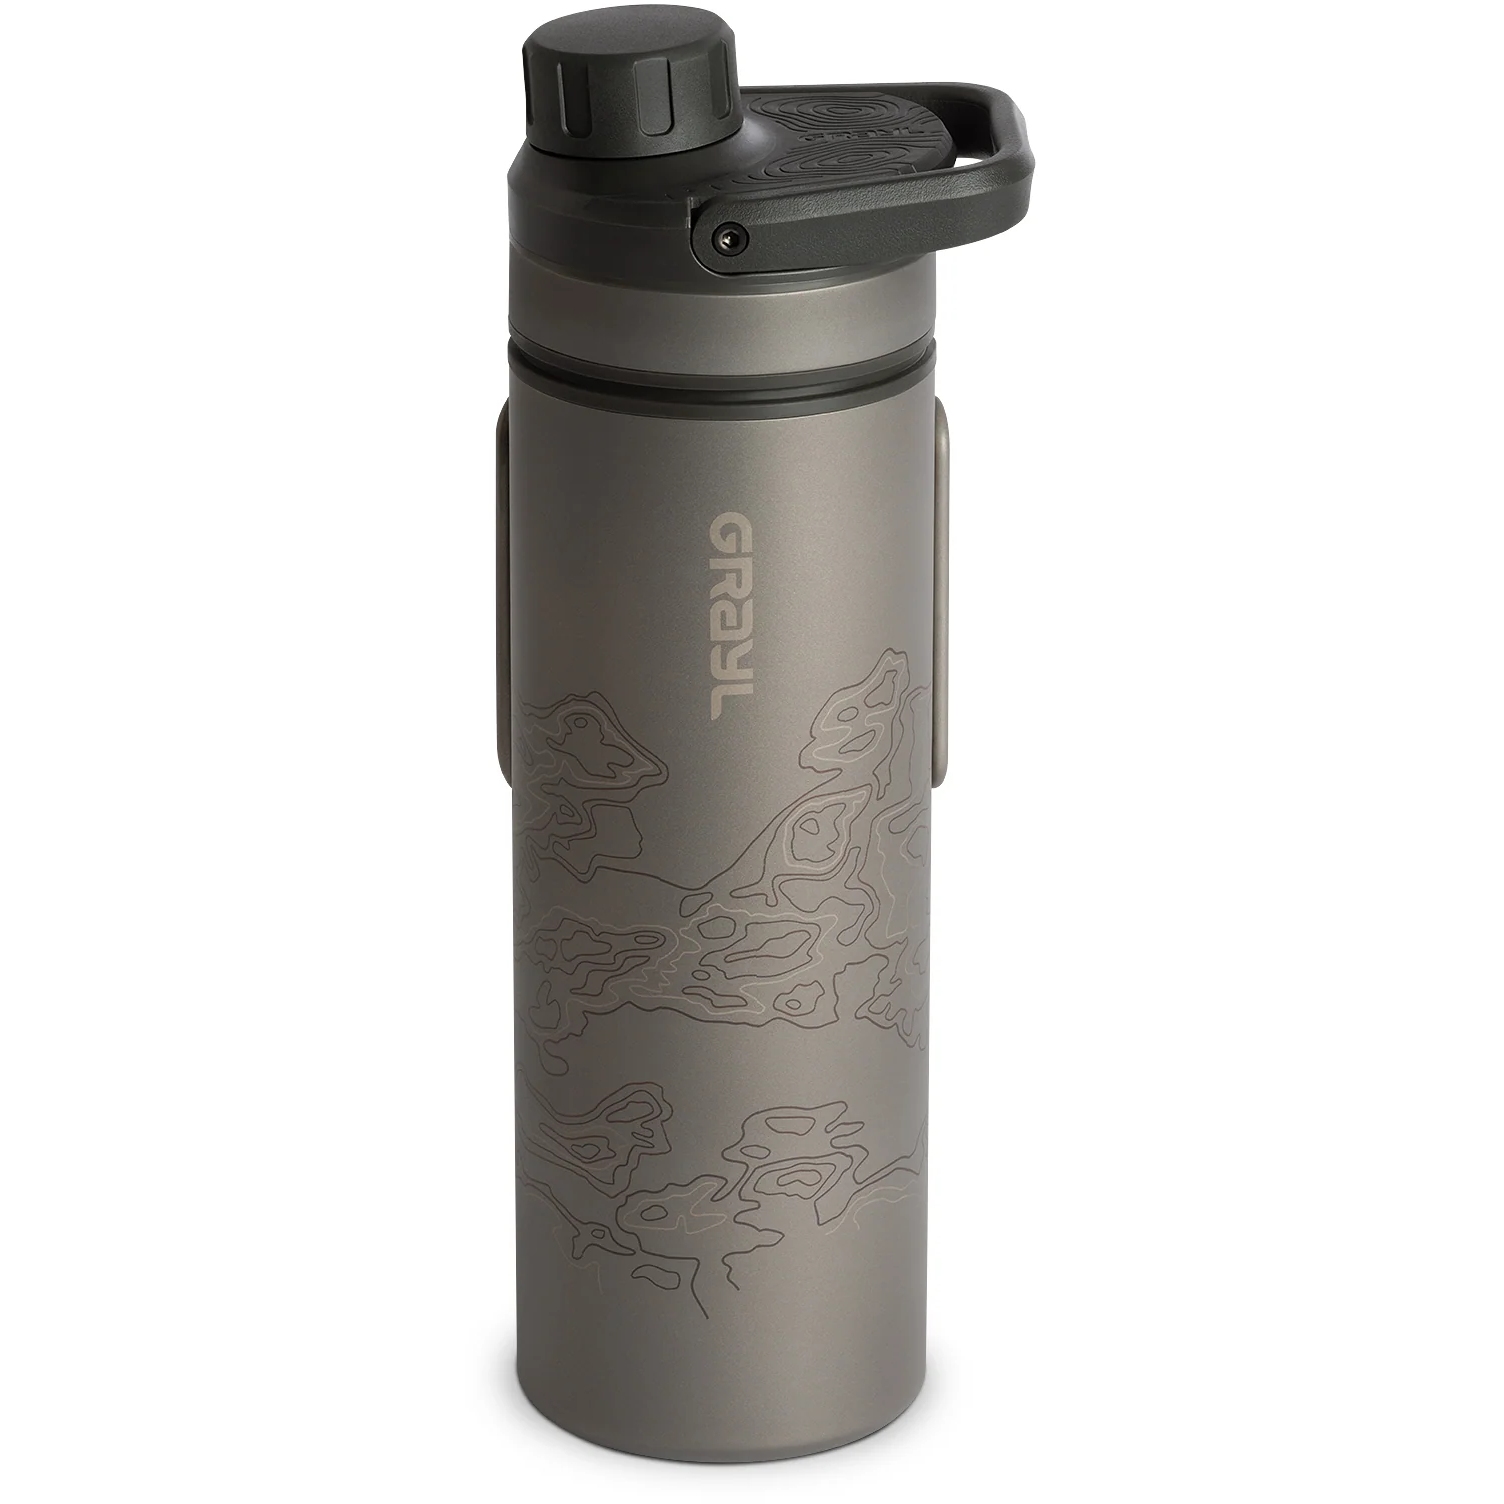 Produktbild von Grayl UltraPress Purifier Titanflasche mit Wasserfilter - 500ml - Covert Black